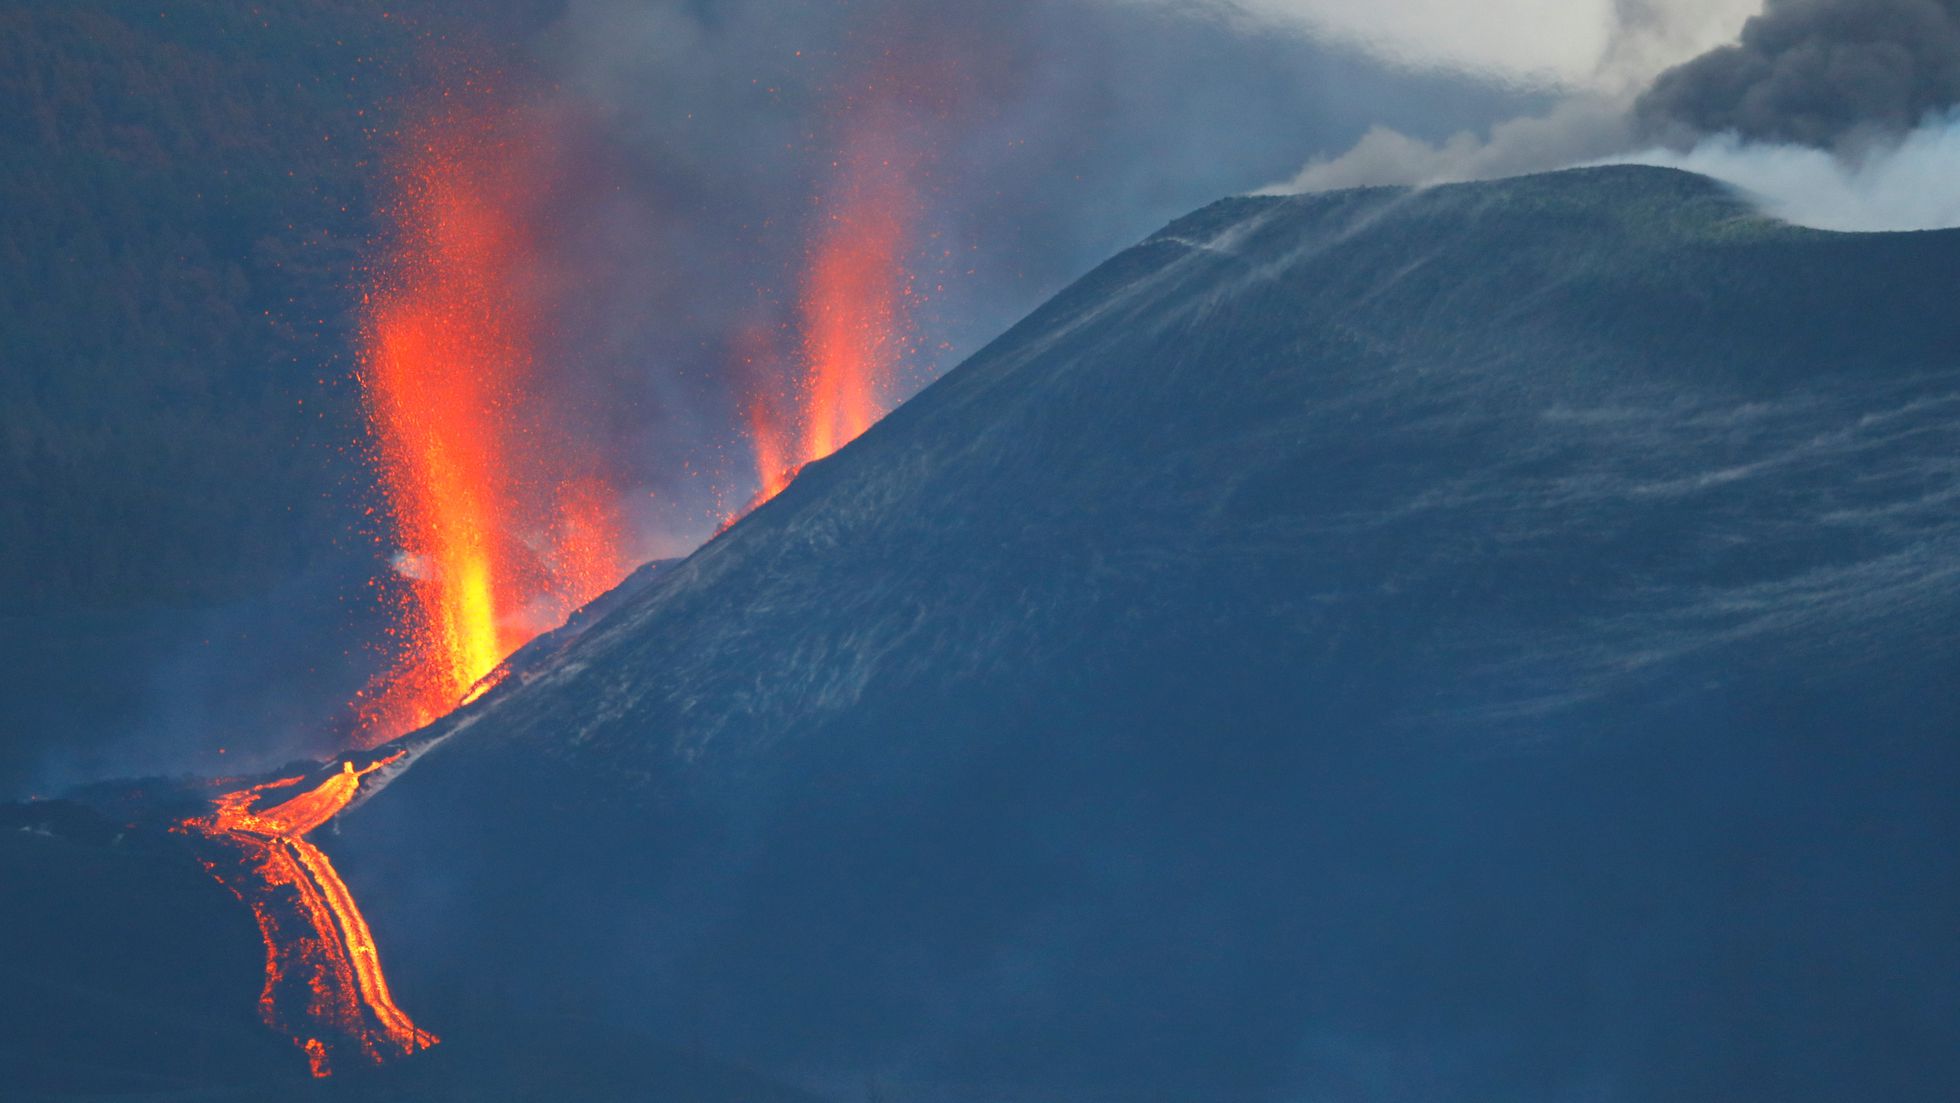 Se abren nuevos focos emisores en el volcán de La Palma: los científicos prevén la erupción más larga en 500 años | Sociedad | EL PAÍS